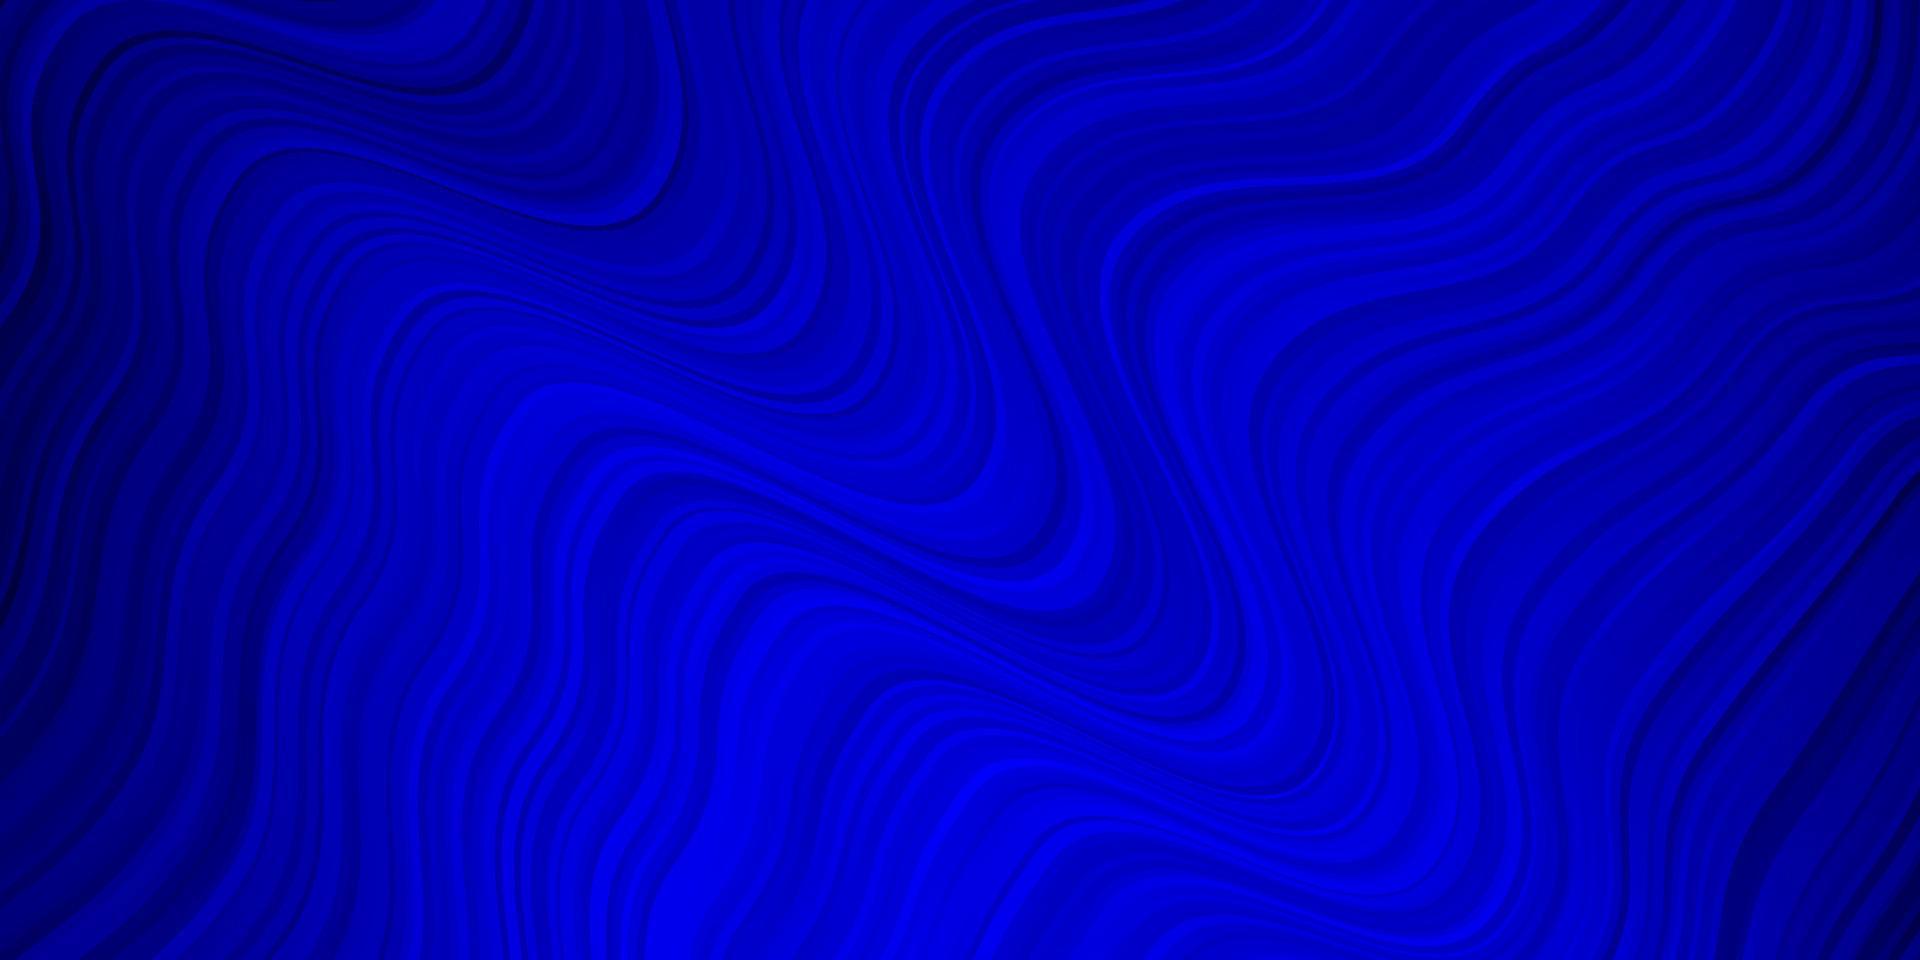 fundo vector azul escuro com linhas curvas.